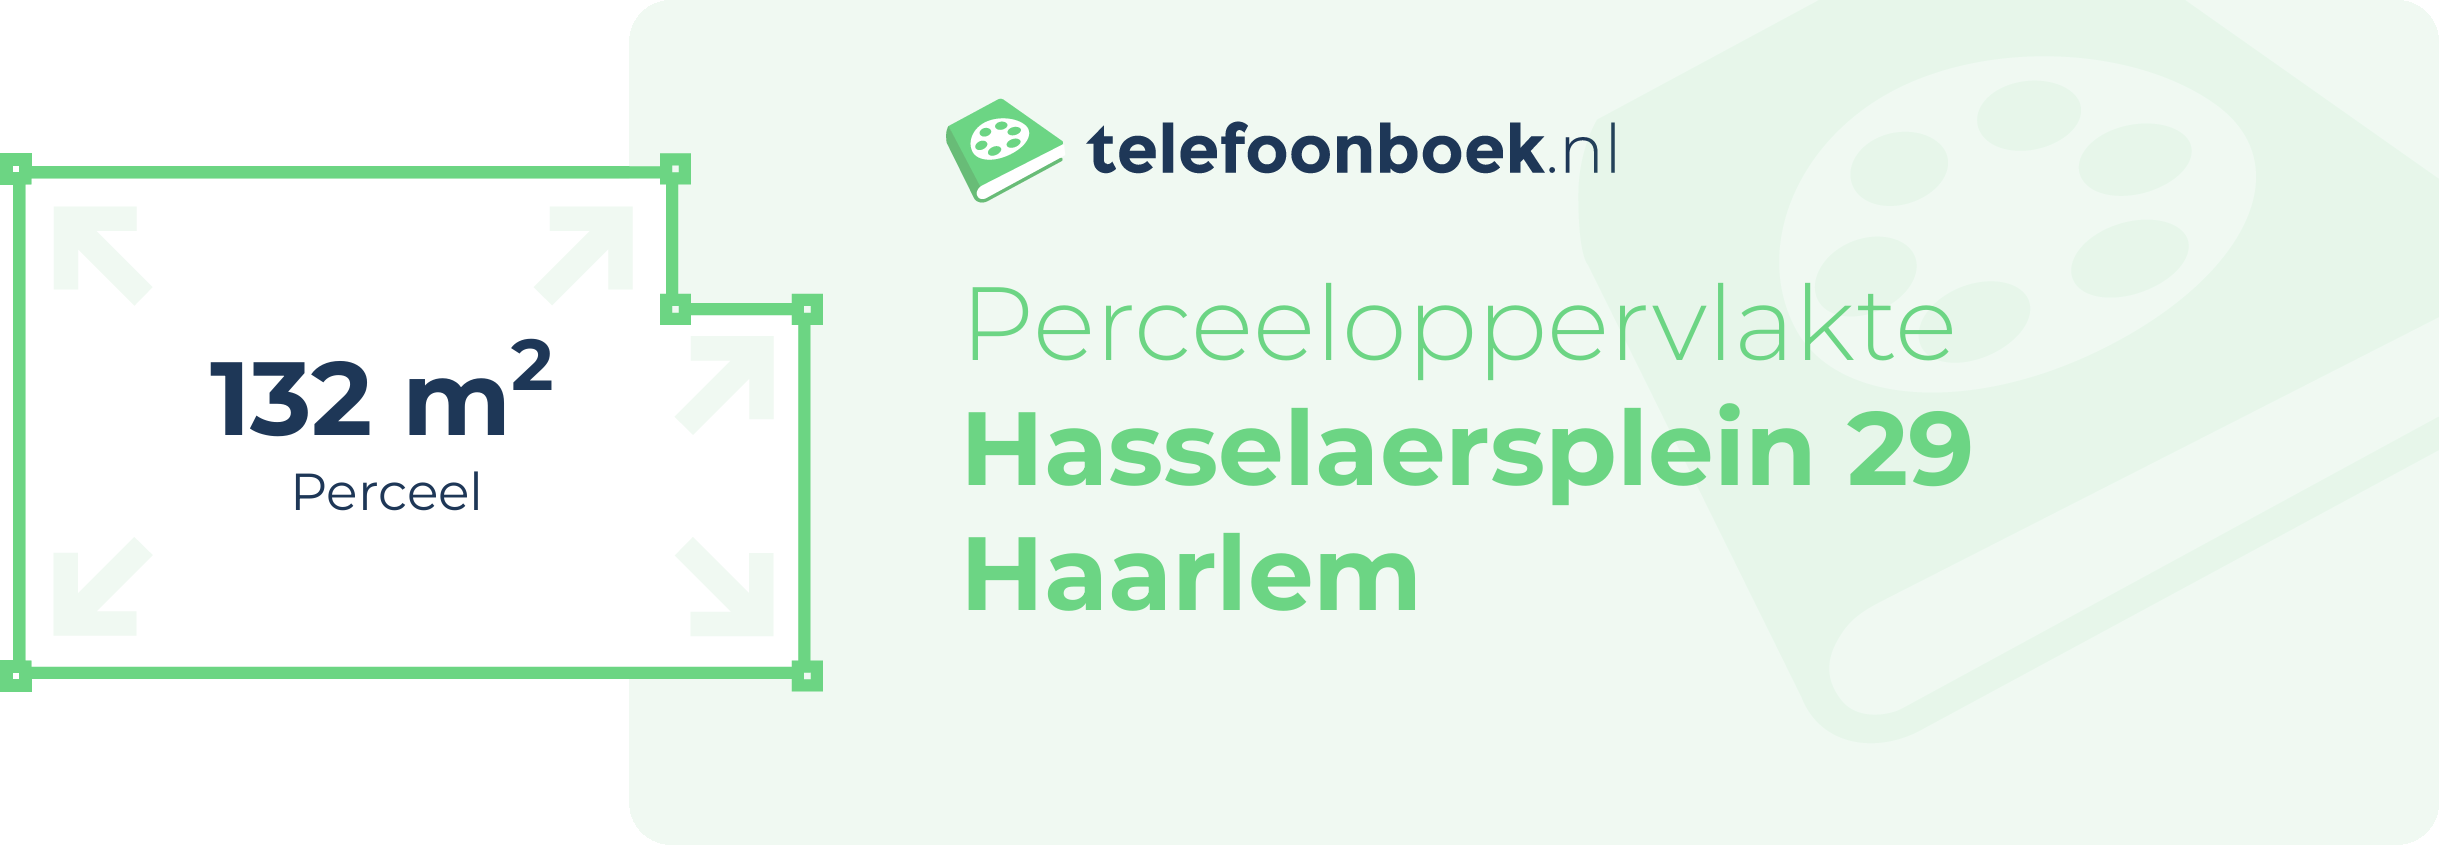 Perceeloppervlakte Hasselaersplein 29 Haarlem